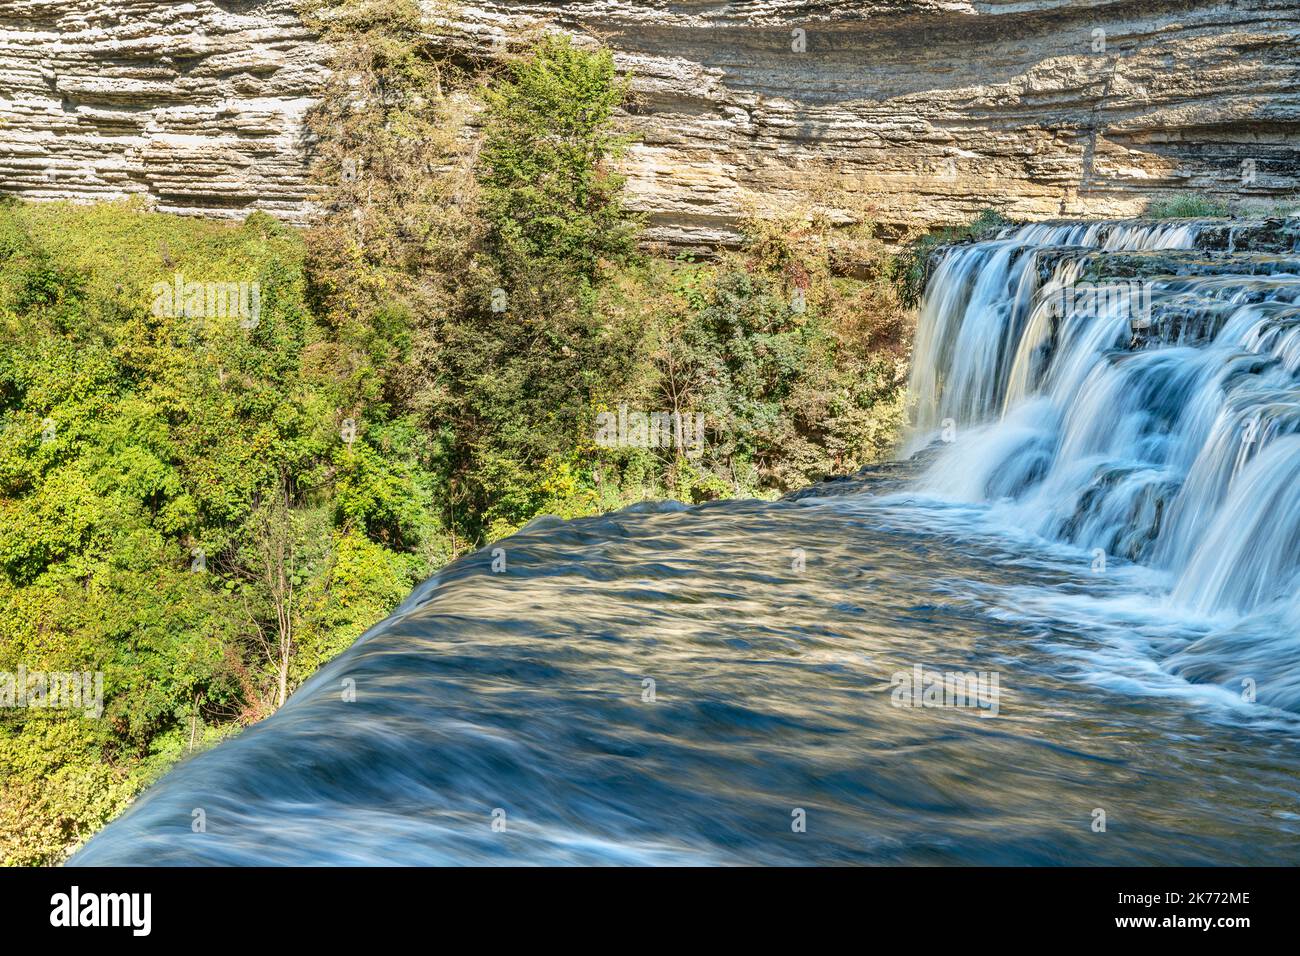 Una splendida cascata a gradini scattata con una velocità dell'otturatore ridotta per catturare il movimento scorre lungo il fiume verso una cascata più grande nelle Burges del Tennessee Foto Stock